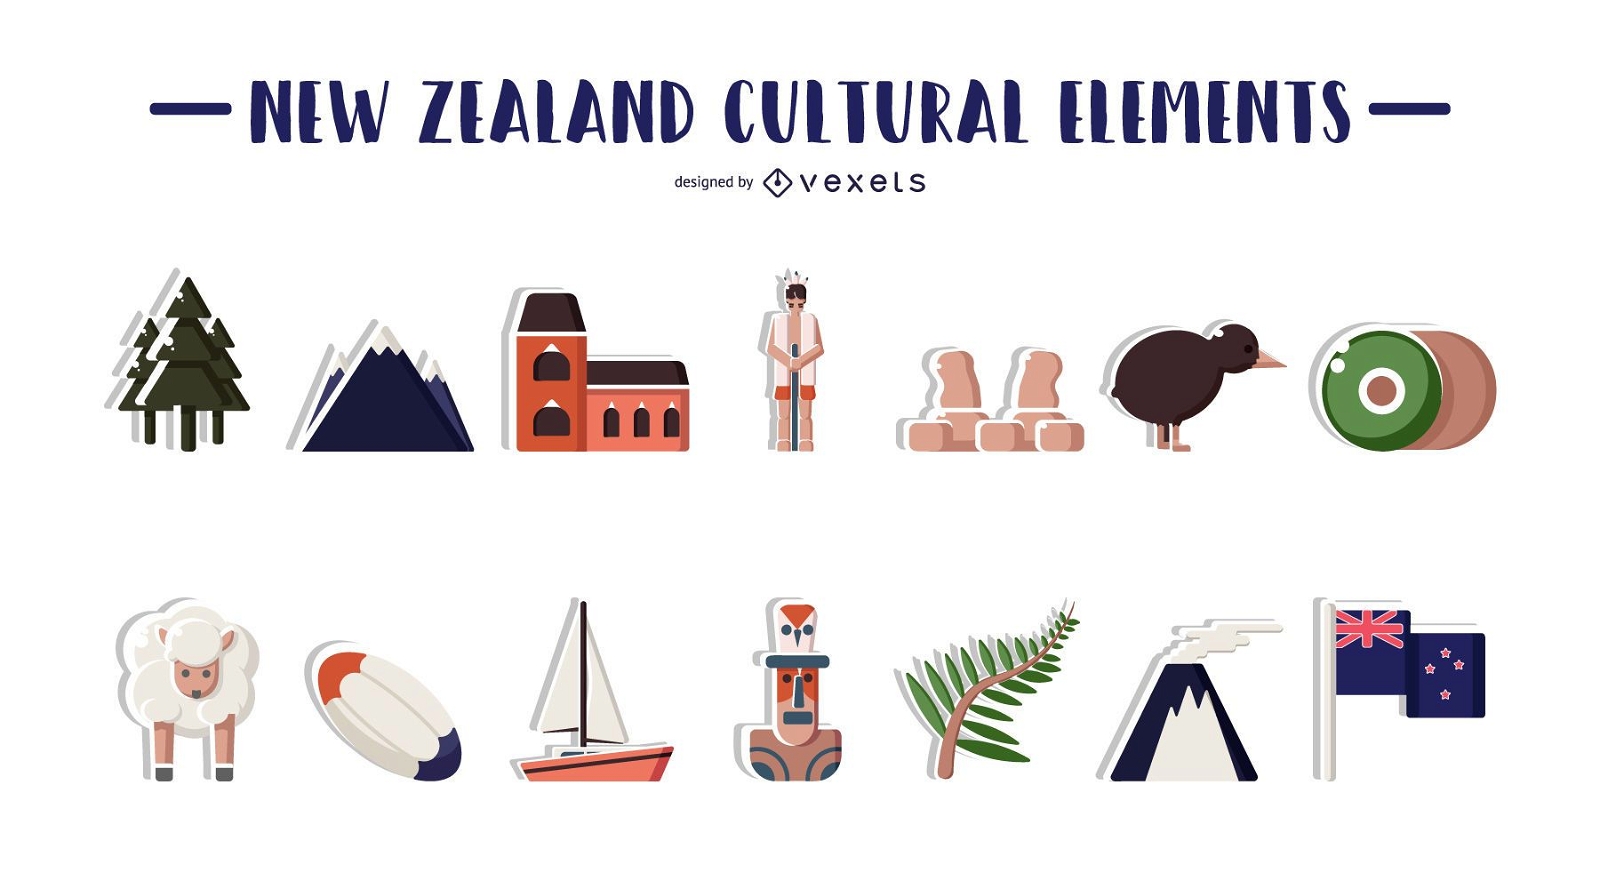 Ilustraci?n de elementos culturales de Nueva Zelanda